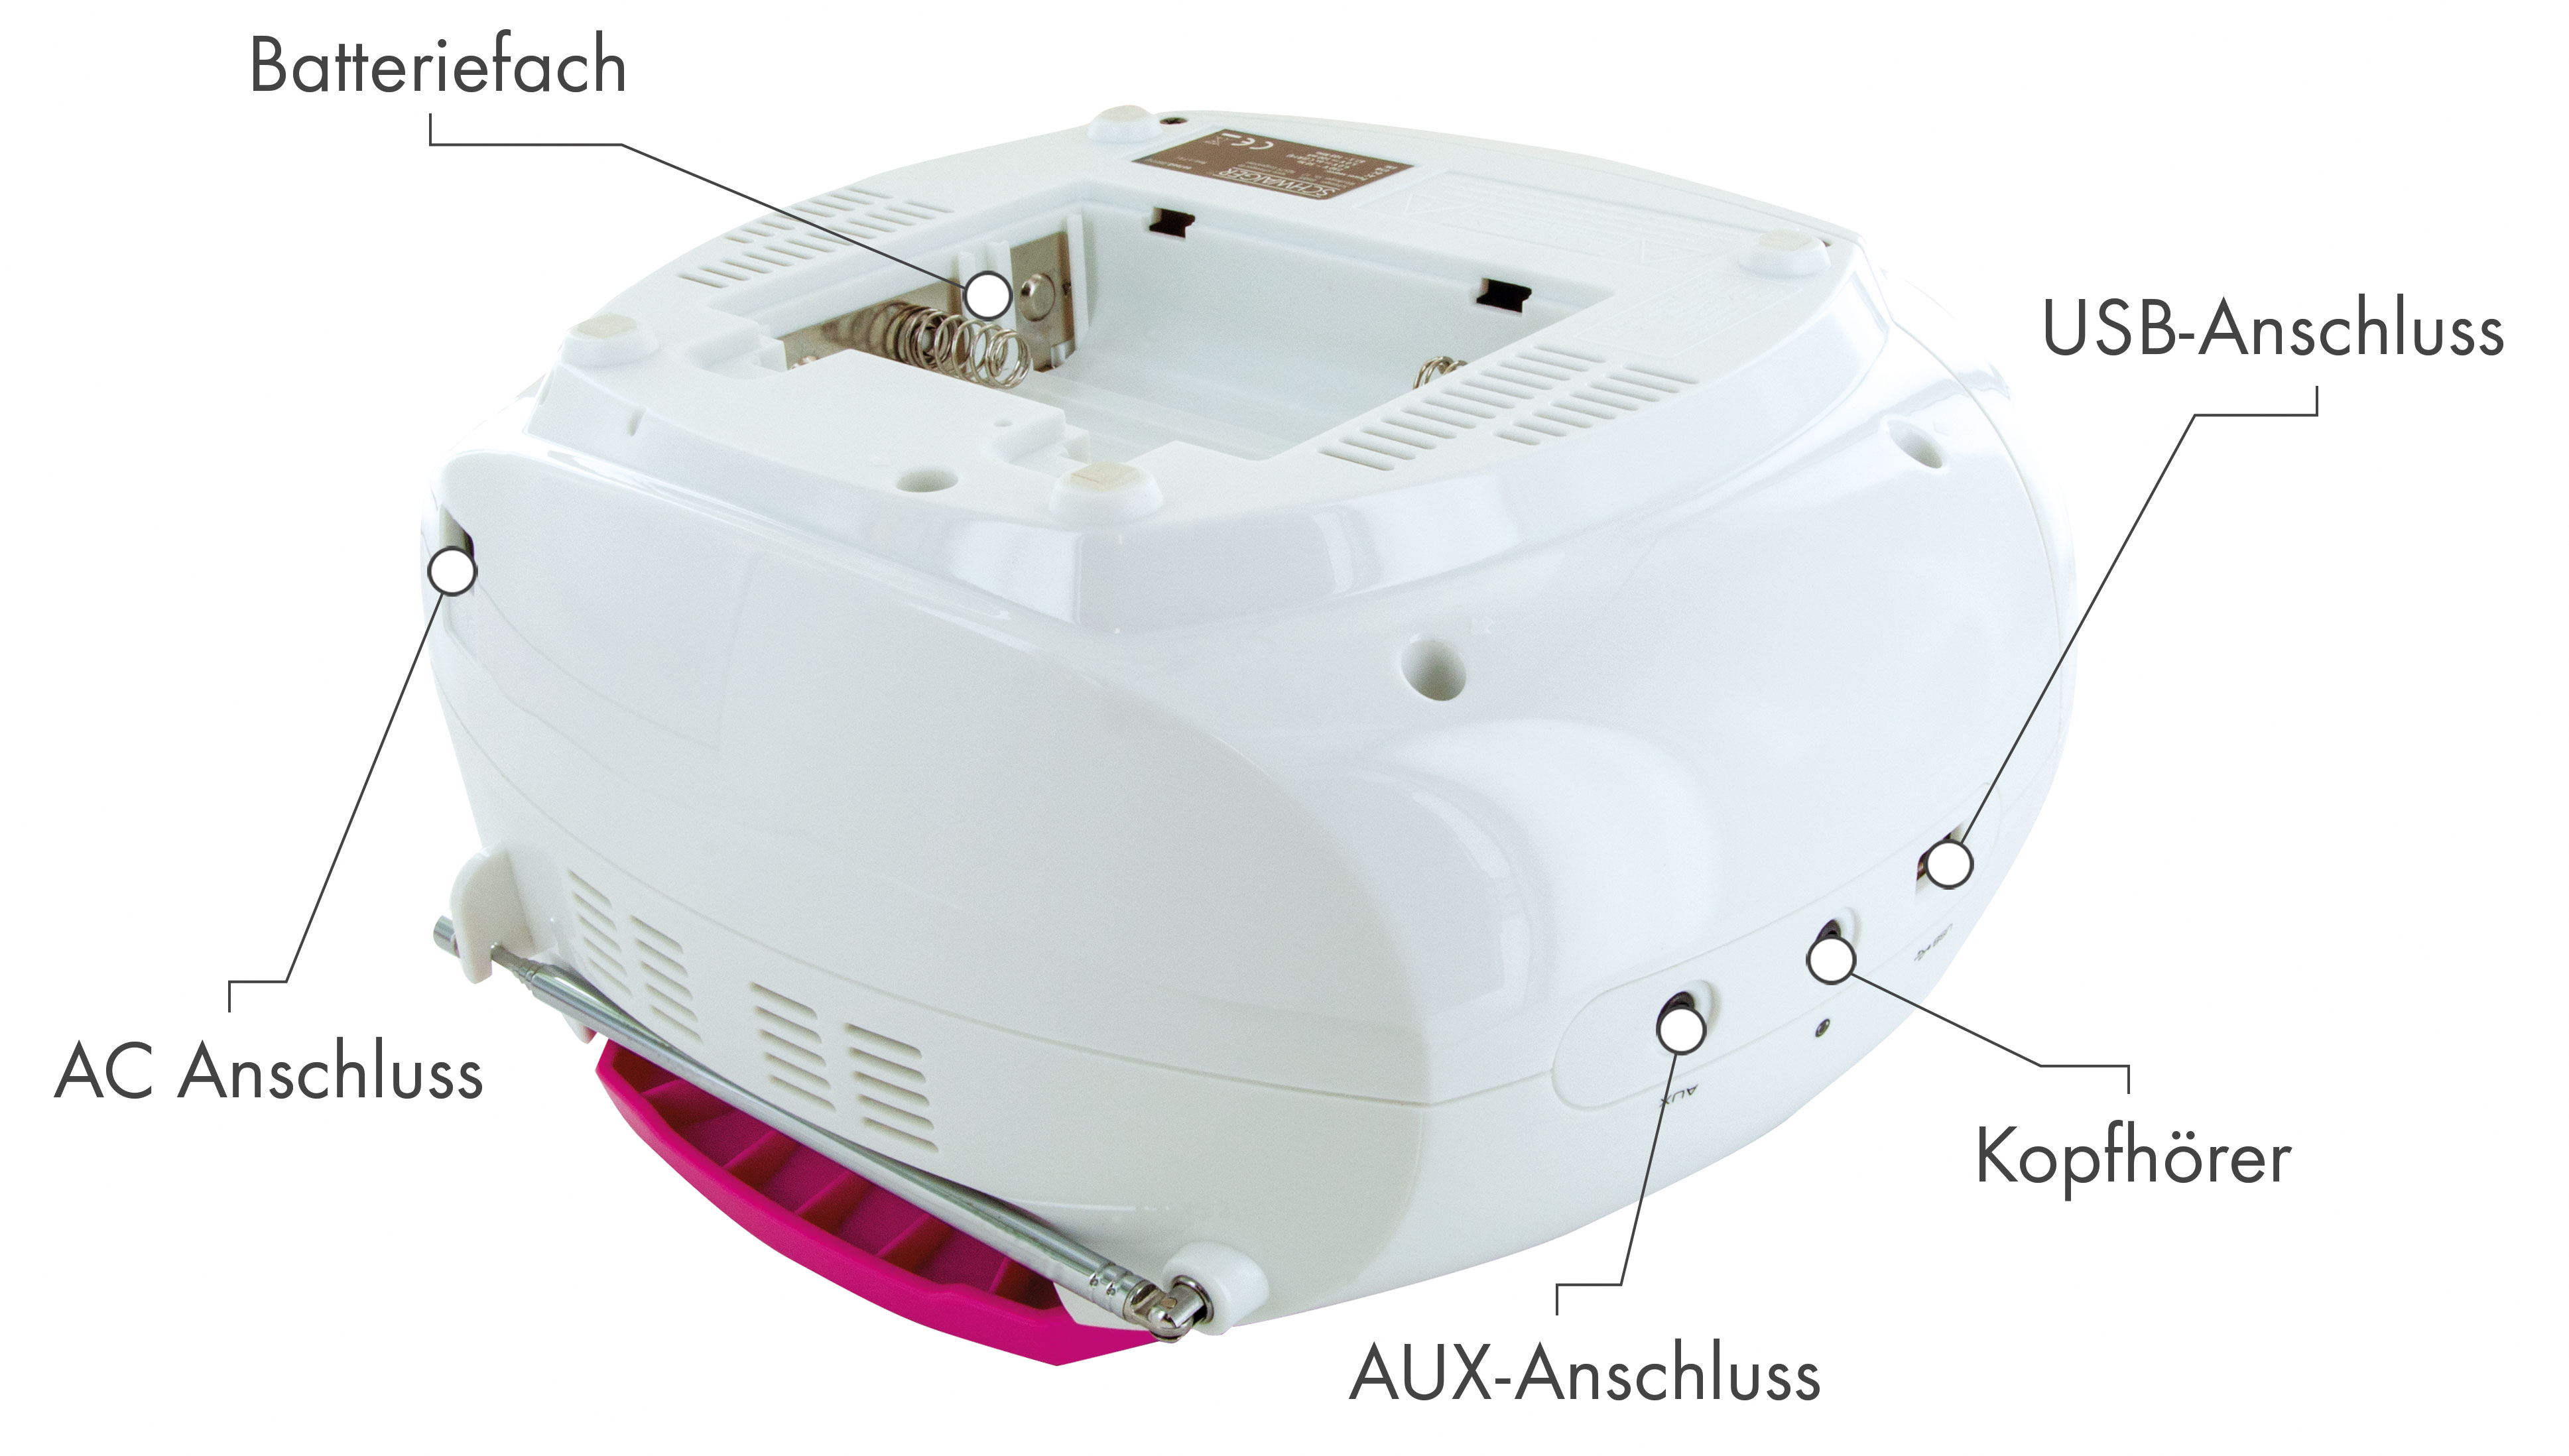 SCHWAIGER -661668- Tragbarer Radio, mit FM CD-Player und Kassettendeck Pink/Weiß